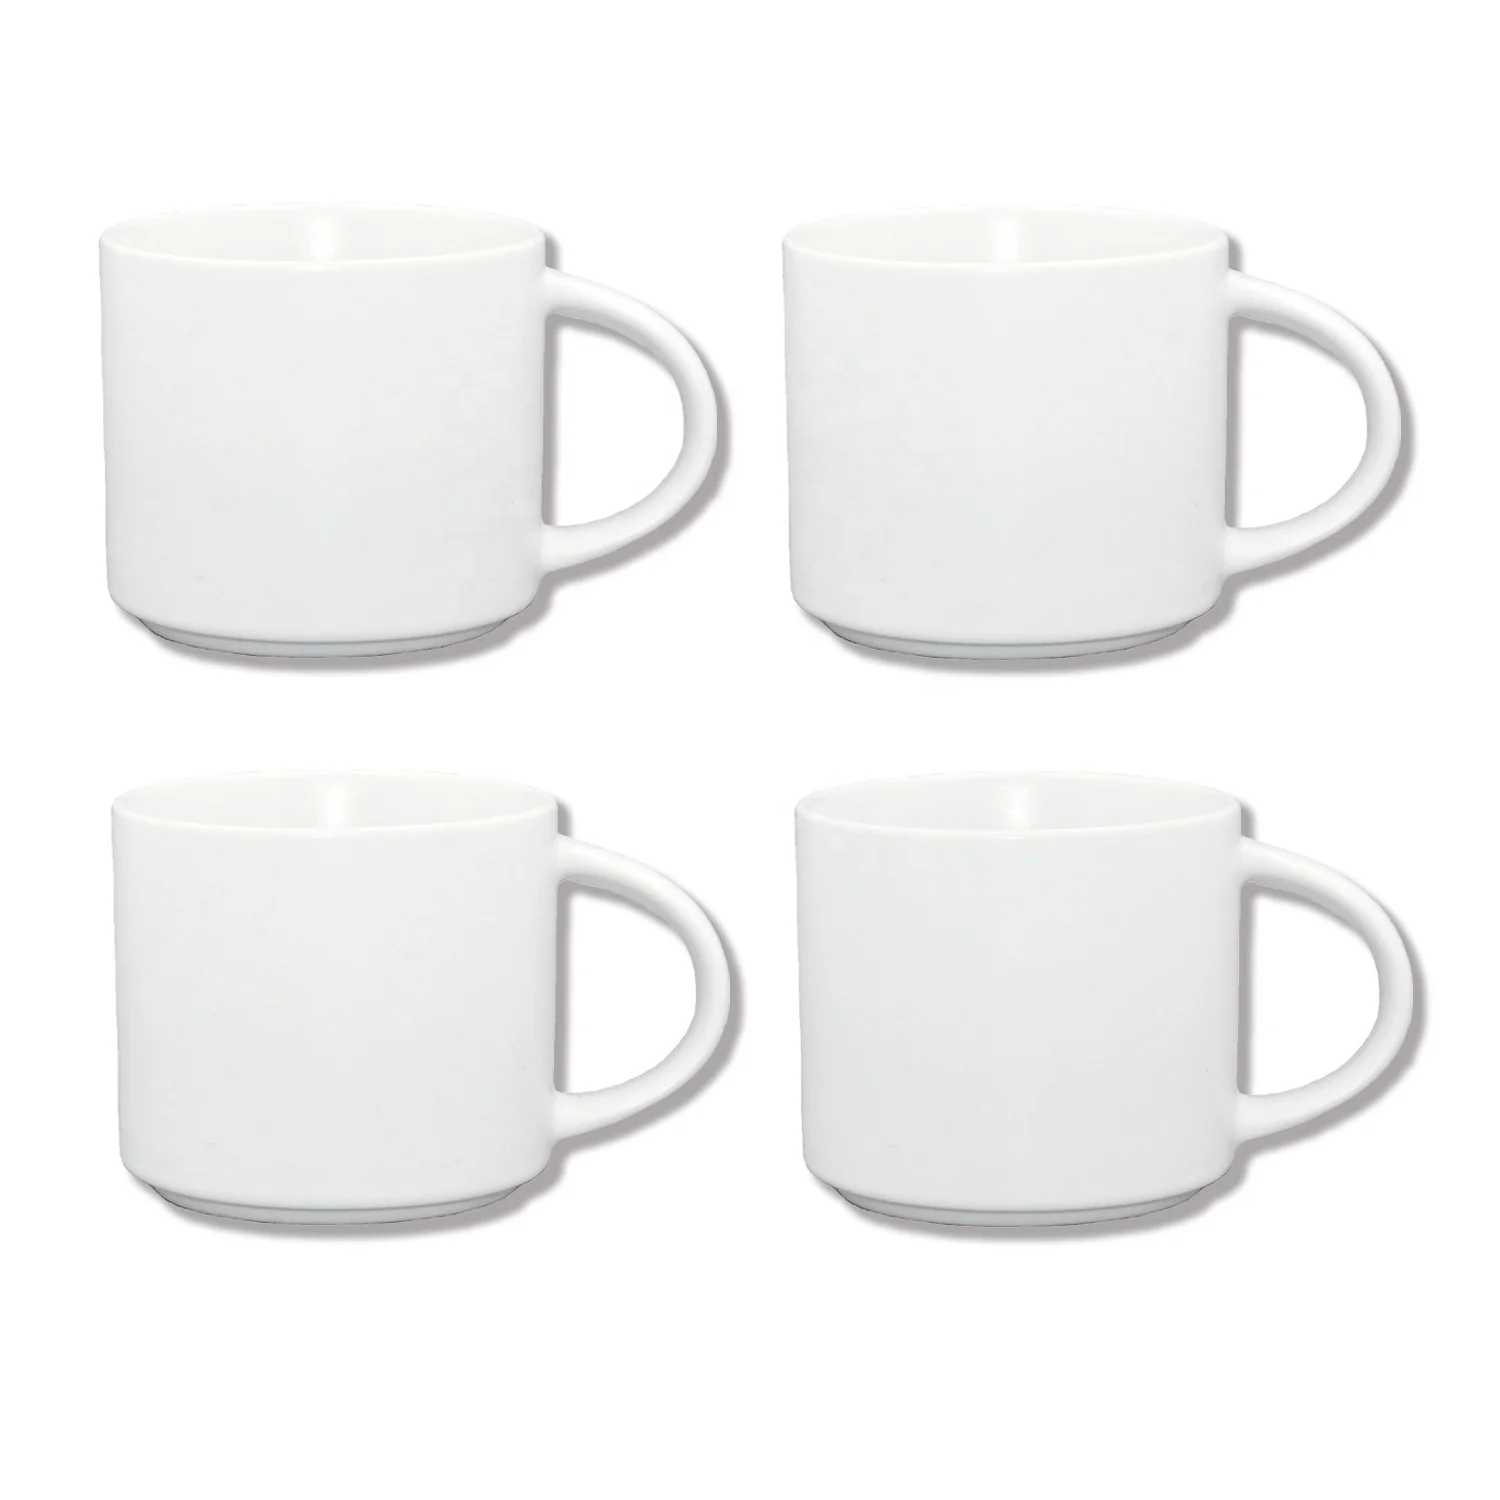 Белая фарфоровая кофейная чашка, 11 унций, оптовая продажа, персонализированные популярные кружки высшего класса, сублимационные керамические кружки, склад США